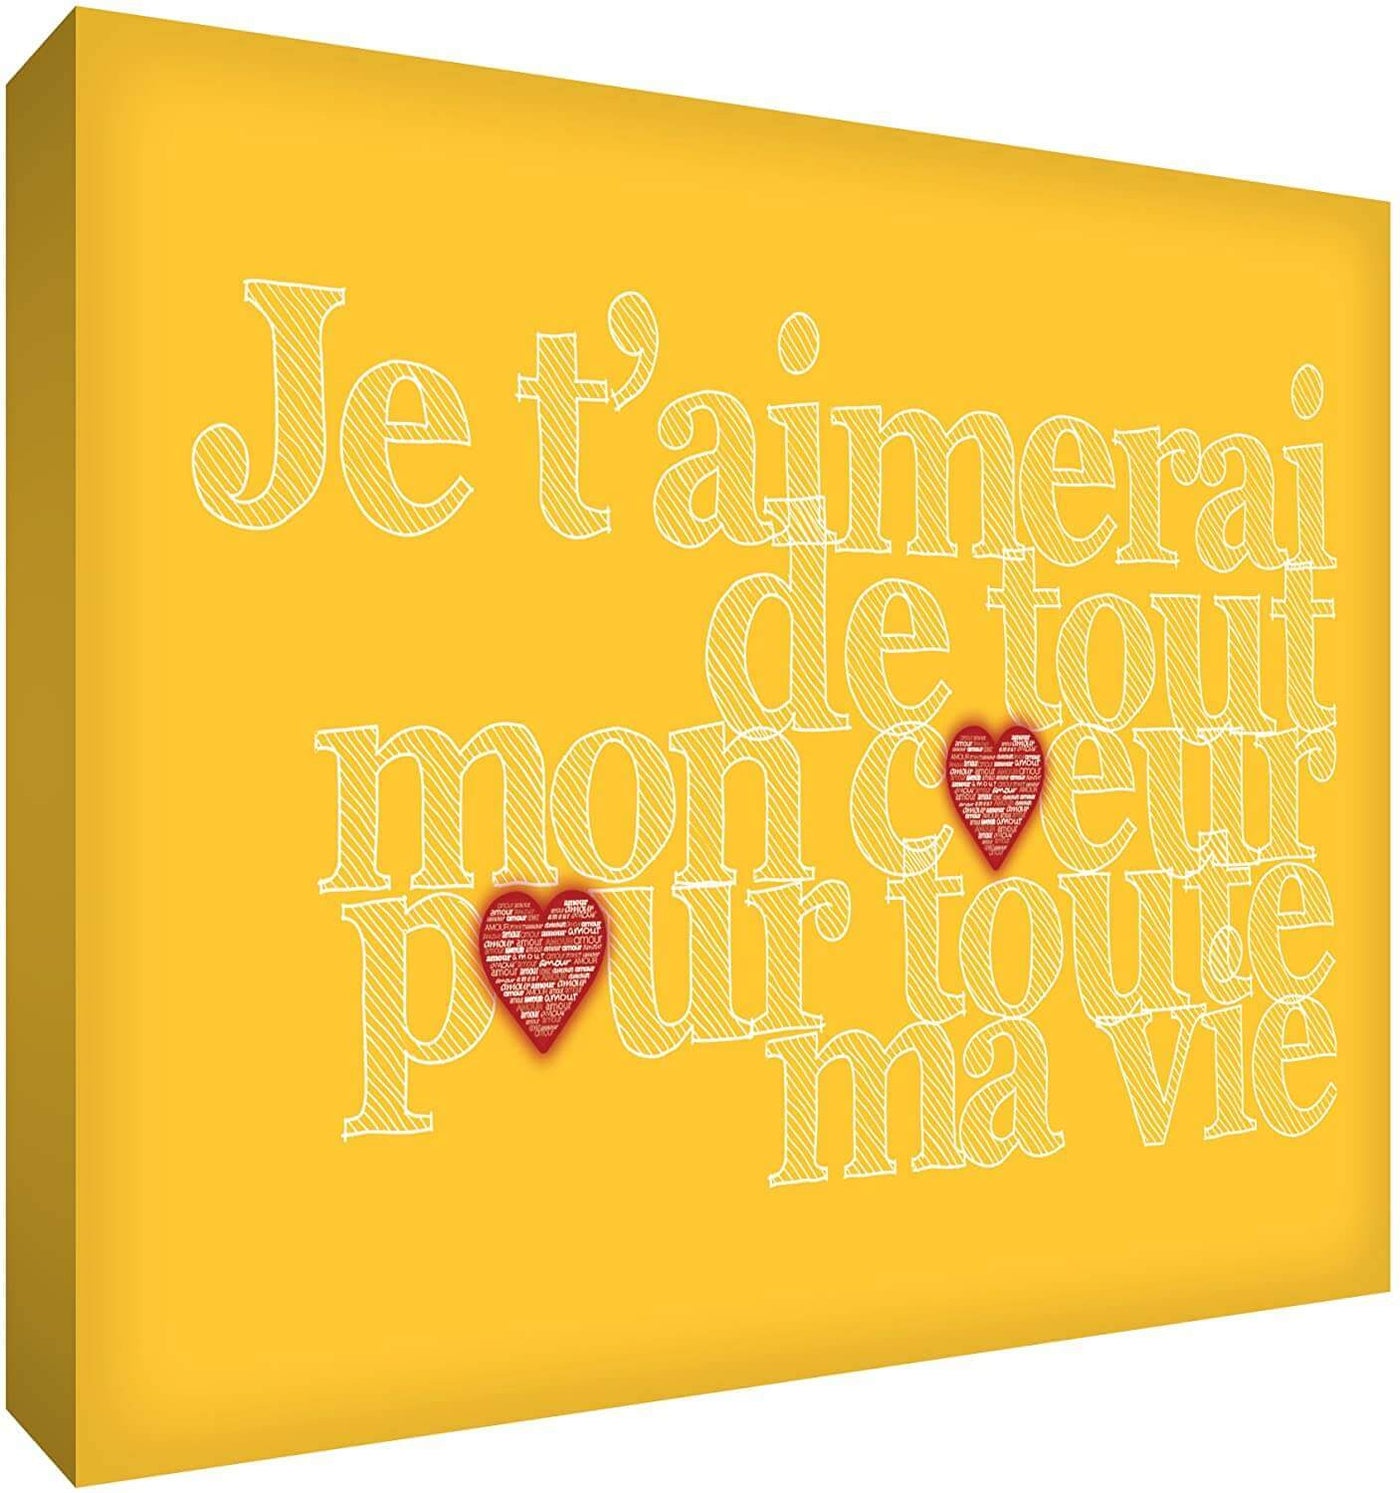 Feel Good Art Canvas Art with French Text - J'aimerai de tout mon coeur pour toute la vie Size Name: 40 x 60 cm Colour Name: Yellow nursery art Earthlets